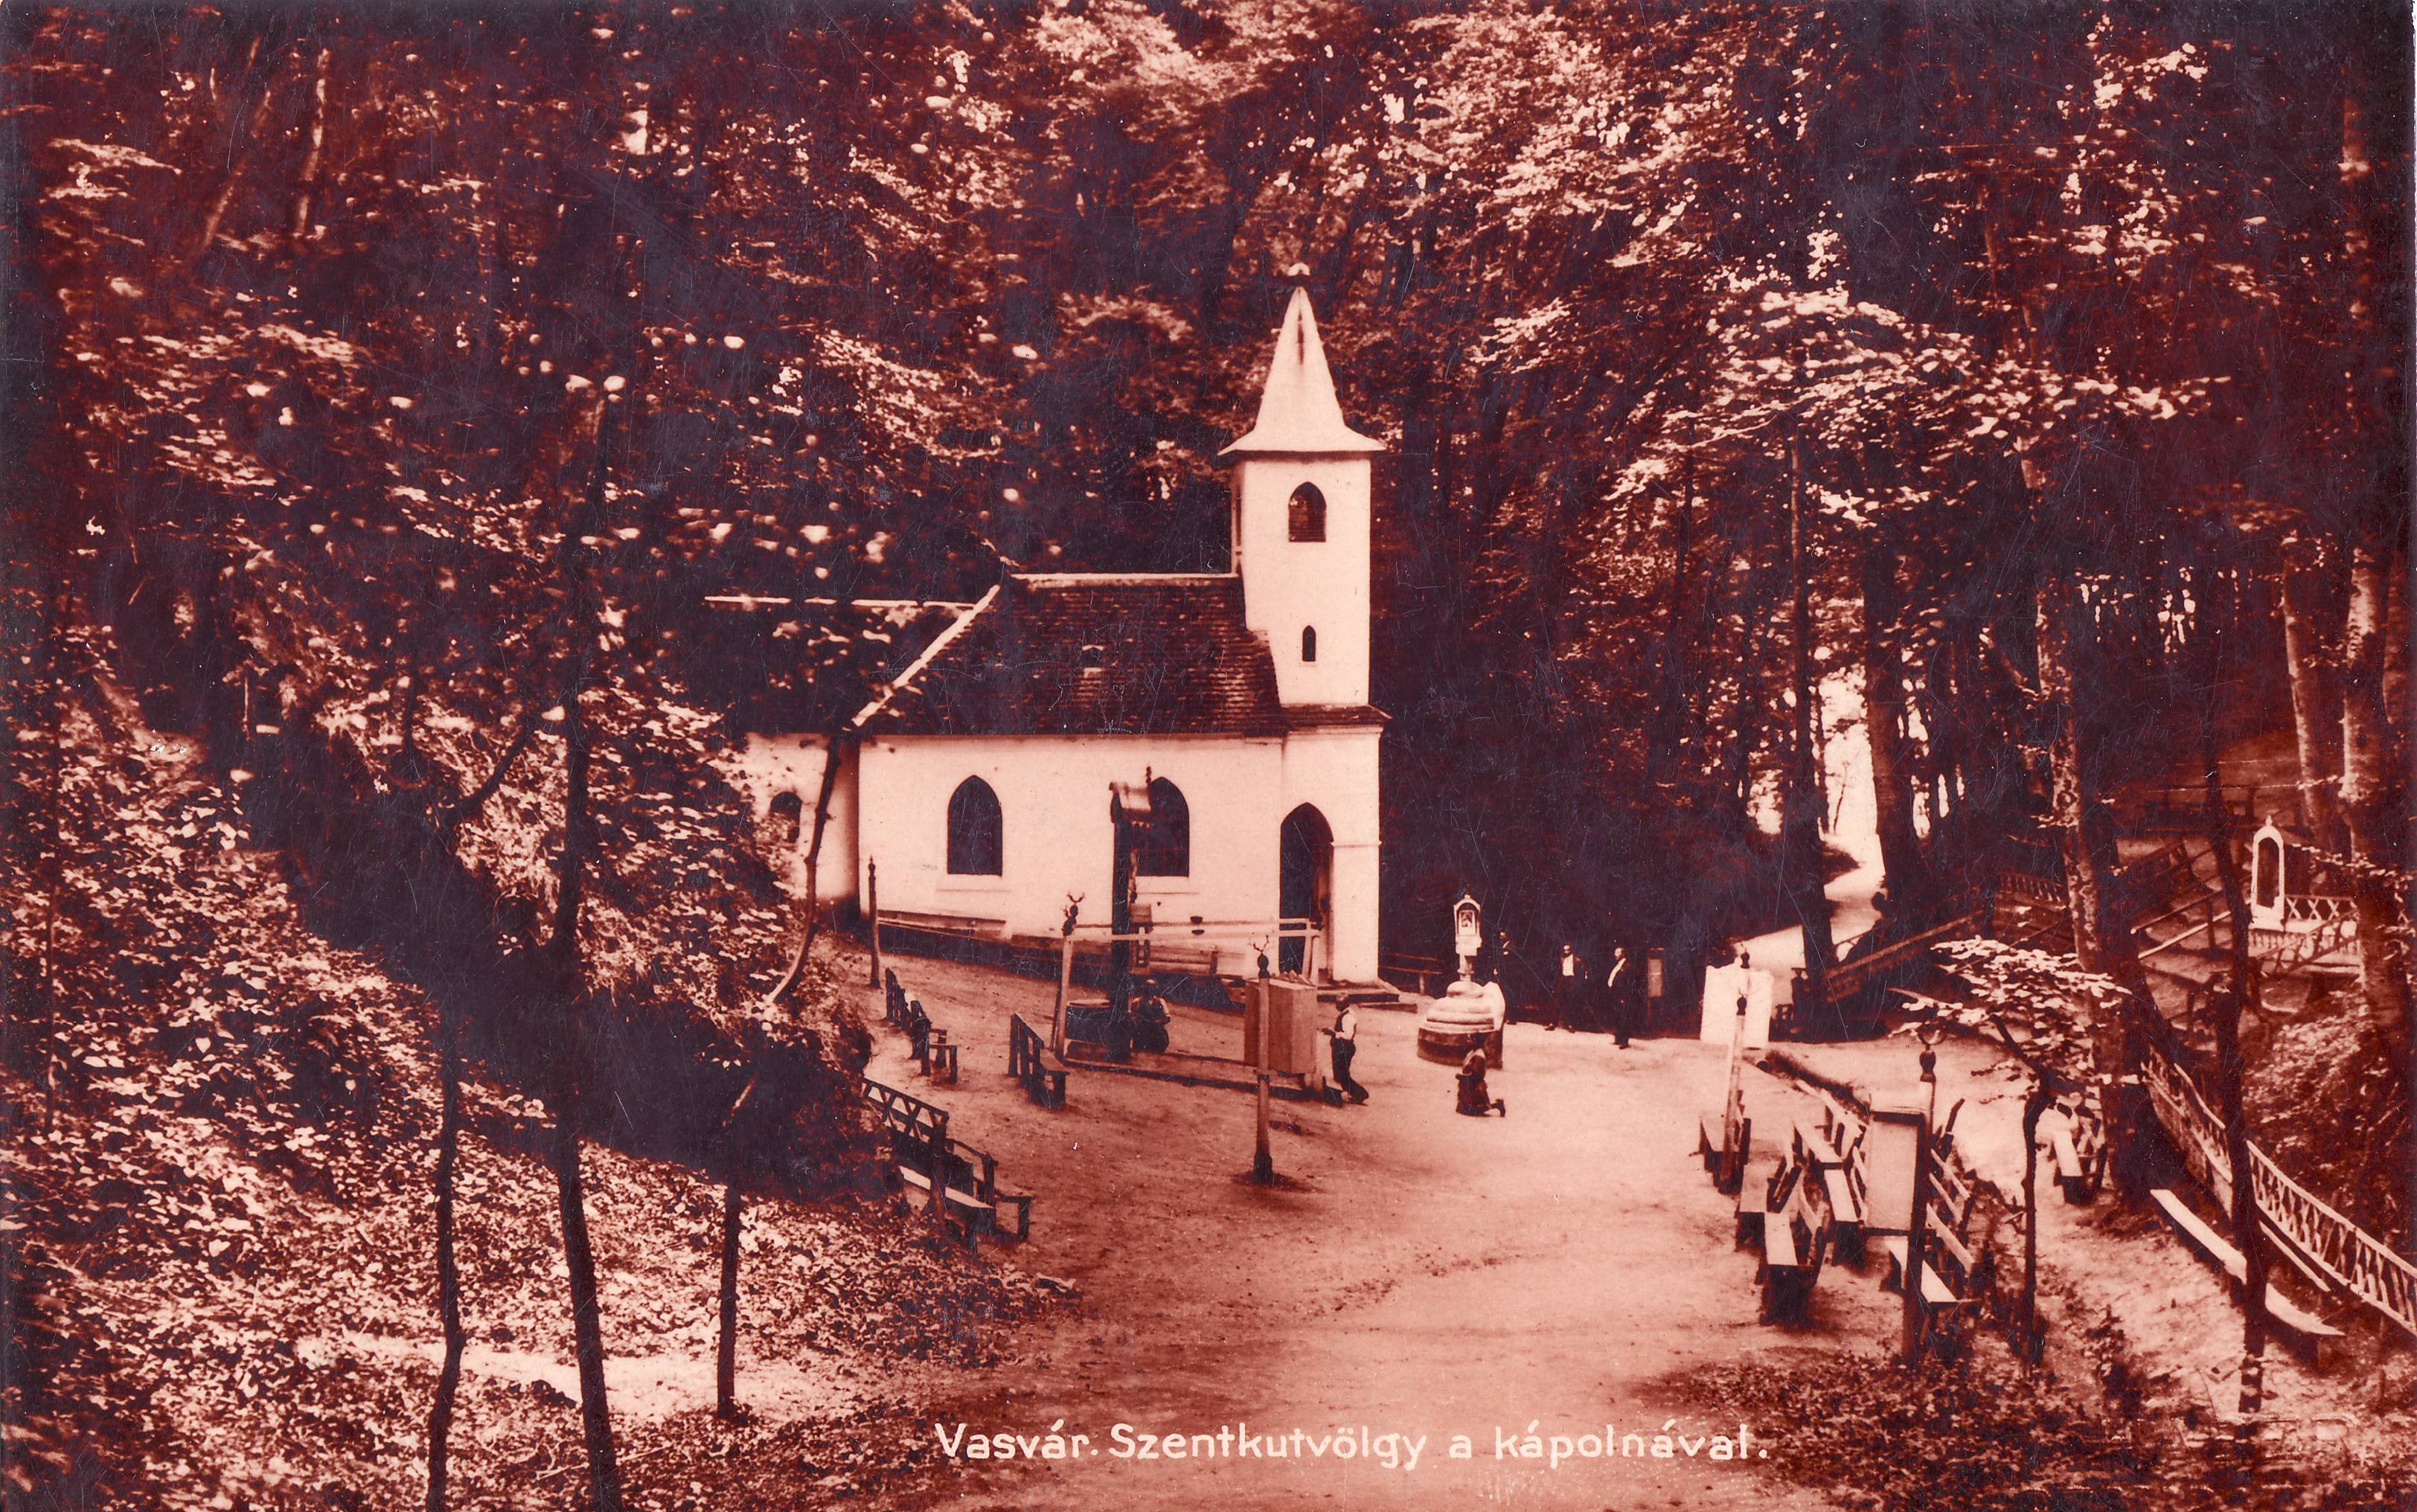 Vasvár – Szentkutvölgy a kápolnával (Magyar Környezetvédelmi és Vízügyi Múzeum - Duna Múzeum CC BY-NC-SA)